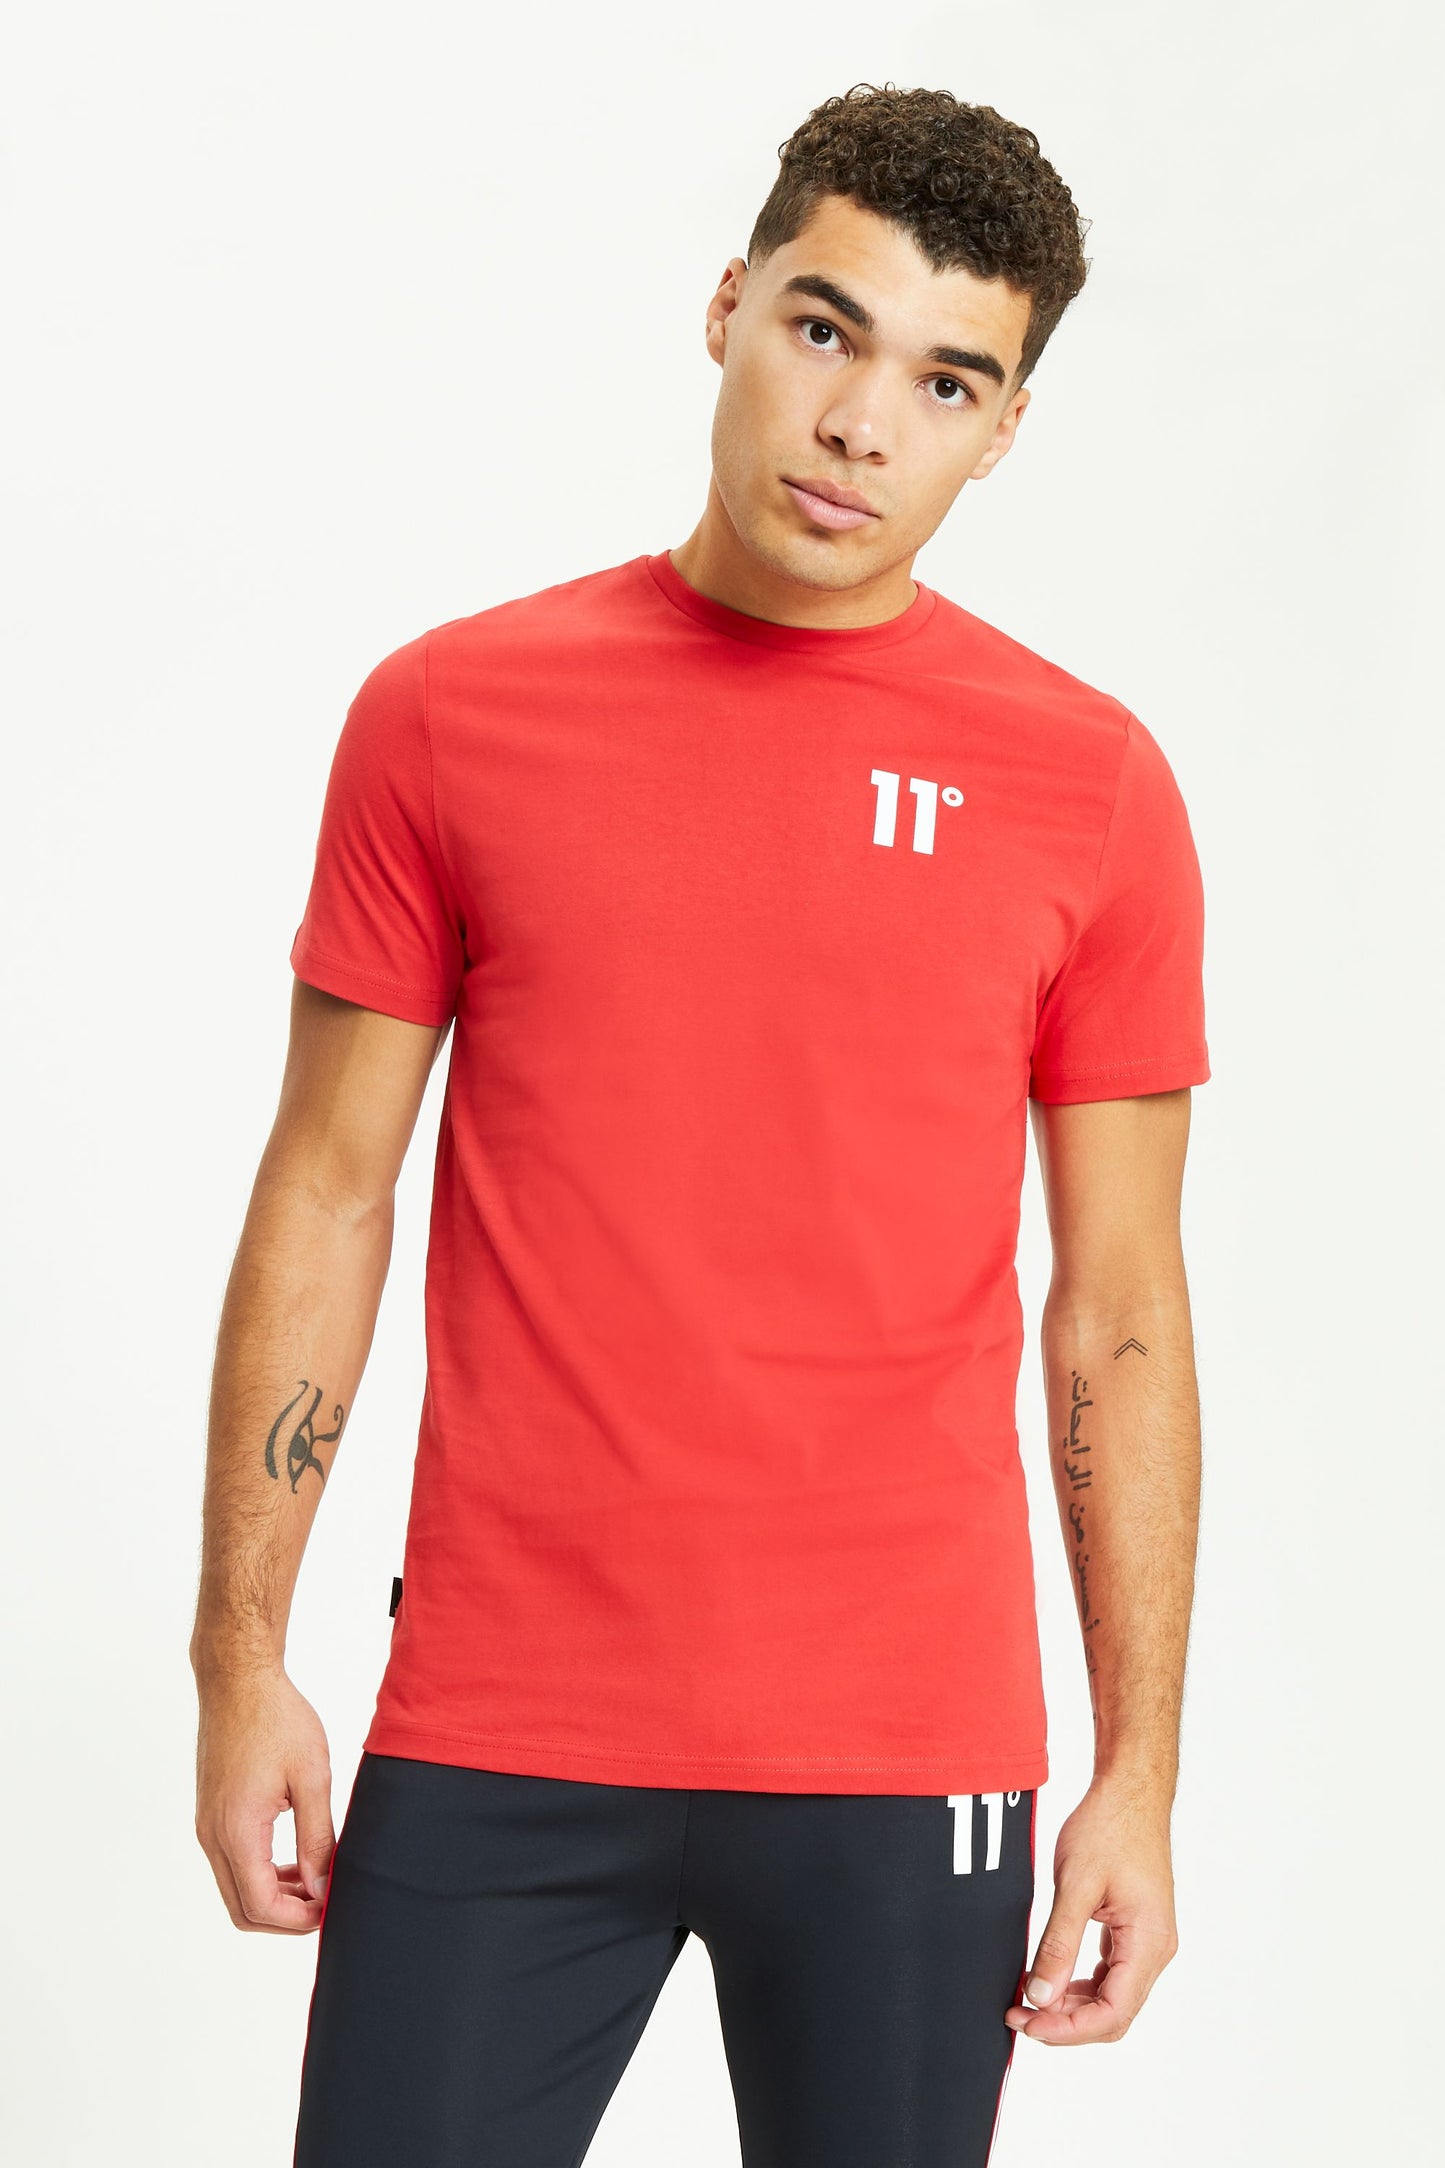 Camiseta 11º red - 11D891-696